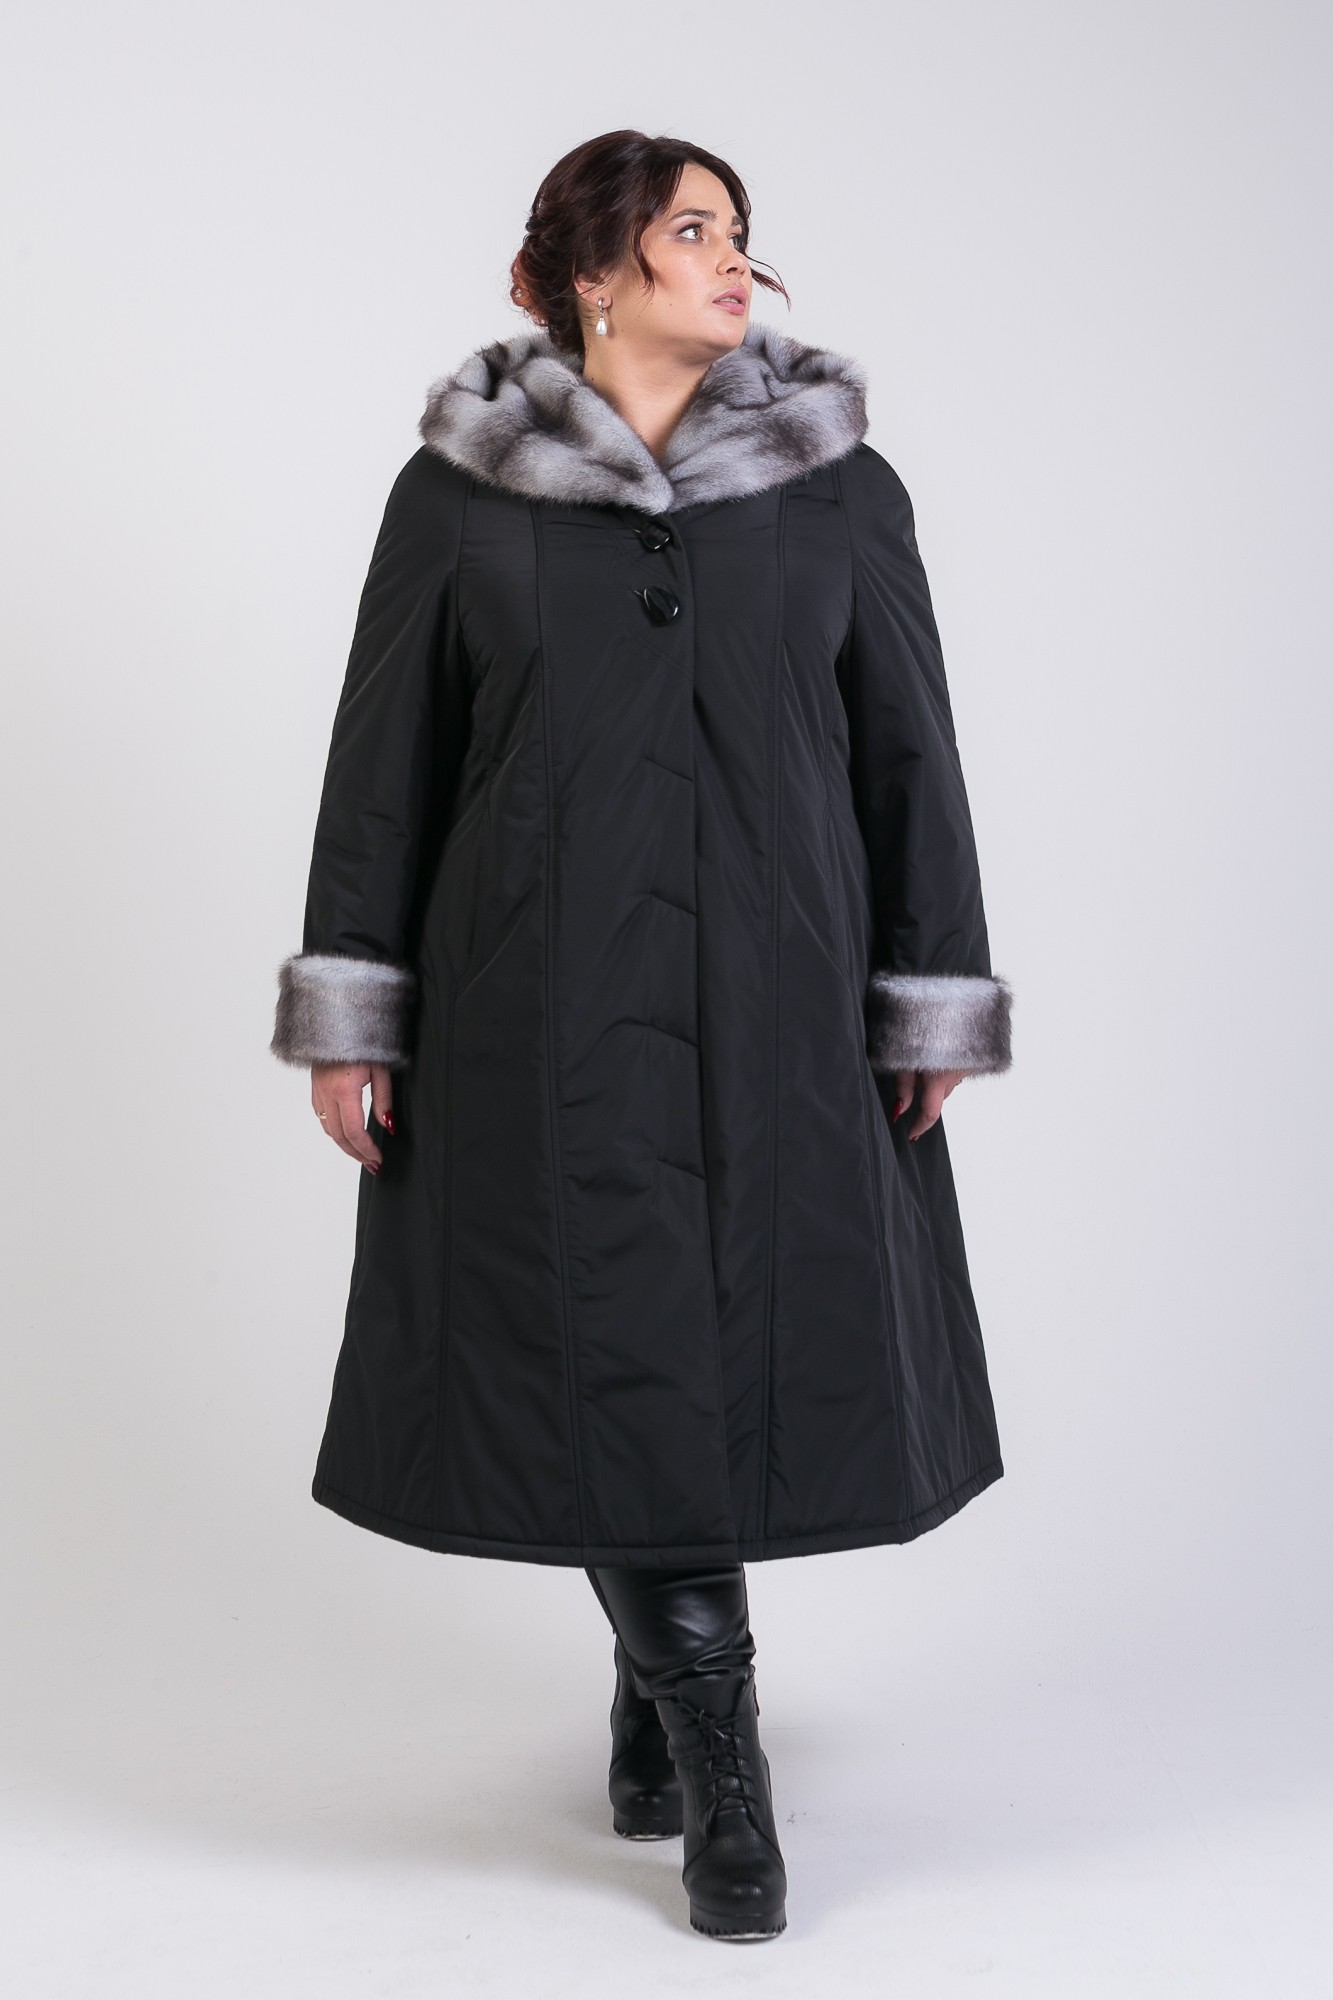 Женский зимнее пальто большого размера купить. Пальто зимнее женское больших размеров. Зимнее пальто больших размеров. Женское зимнее пальто большого размера. Женское зимнее пальто трапеция.